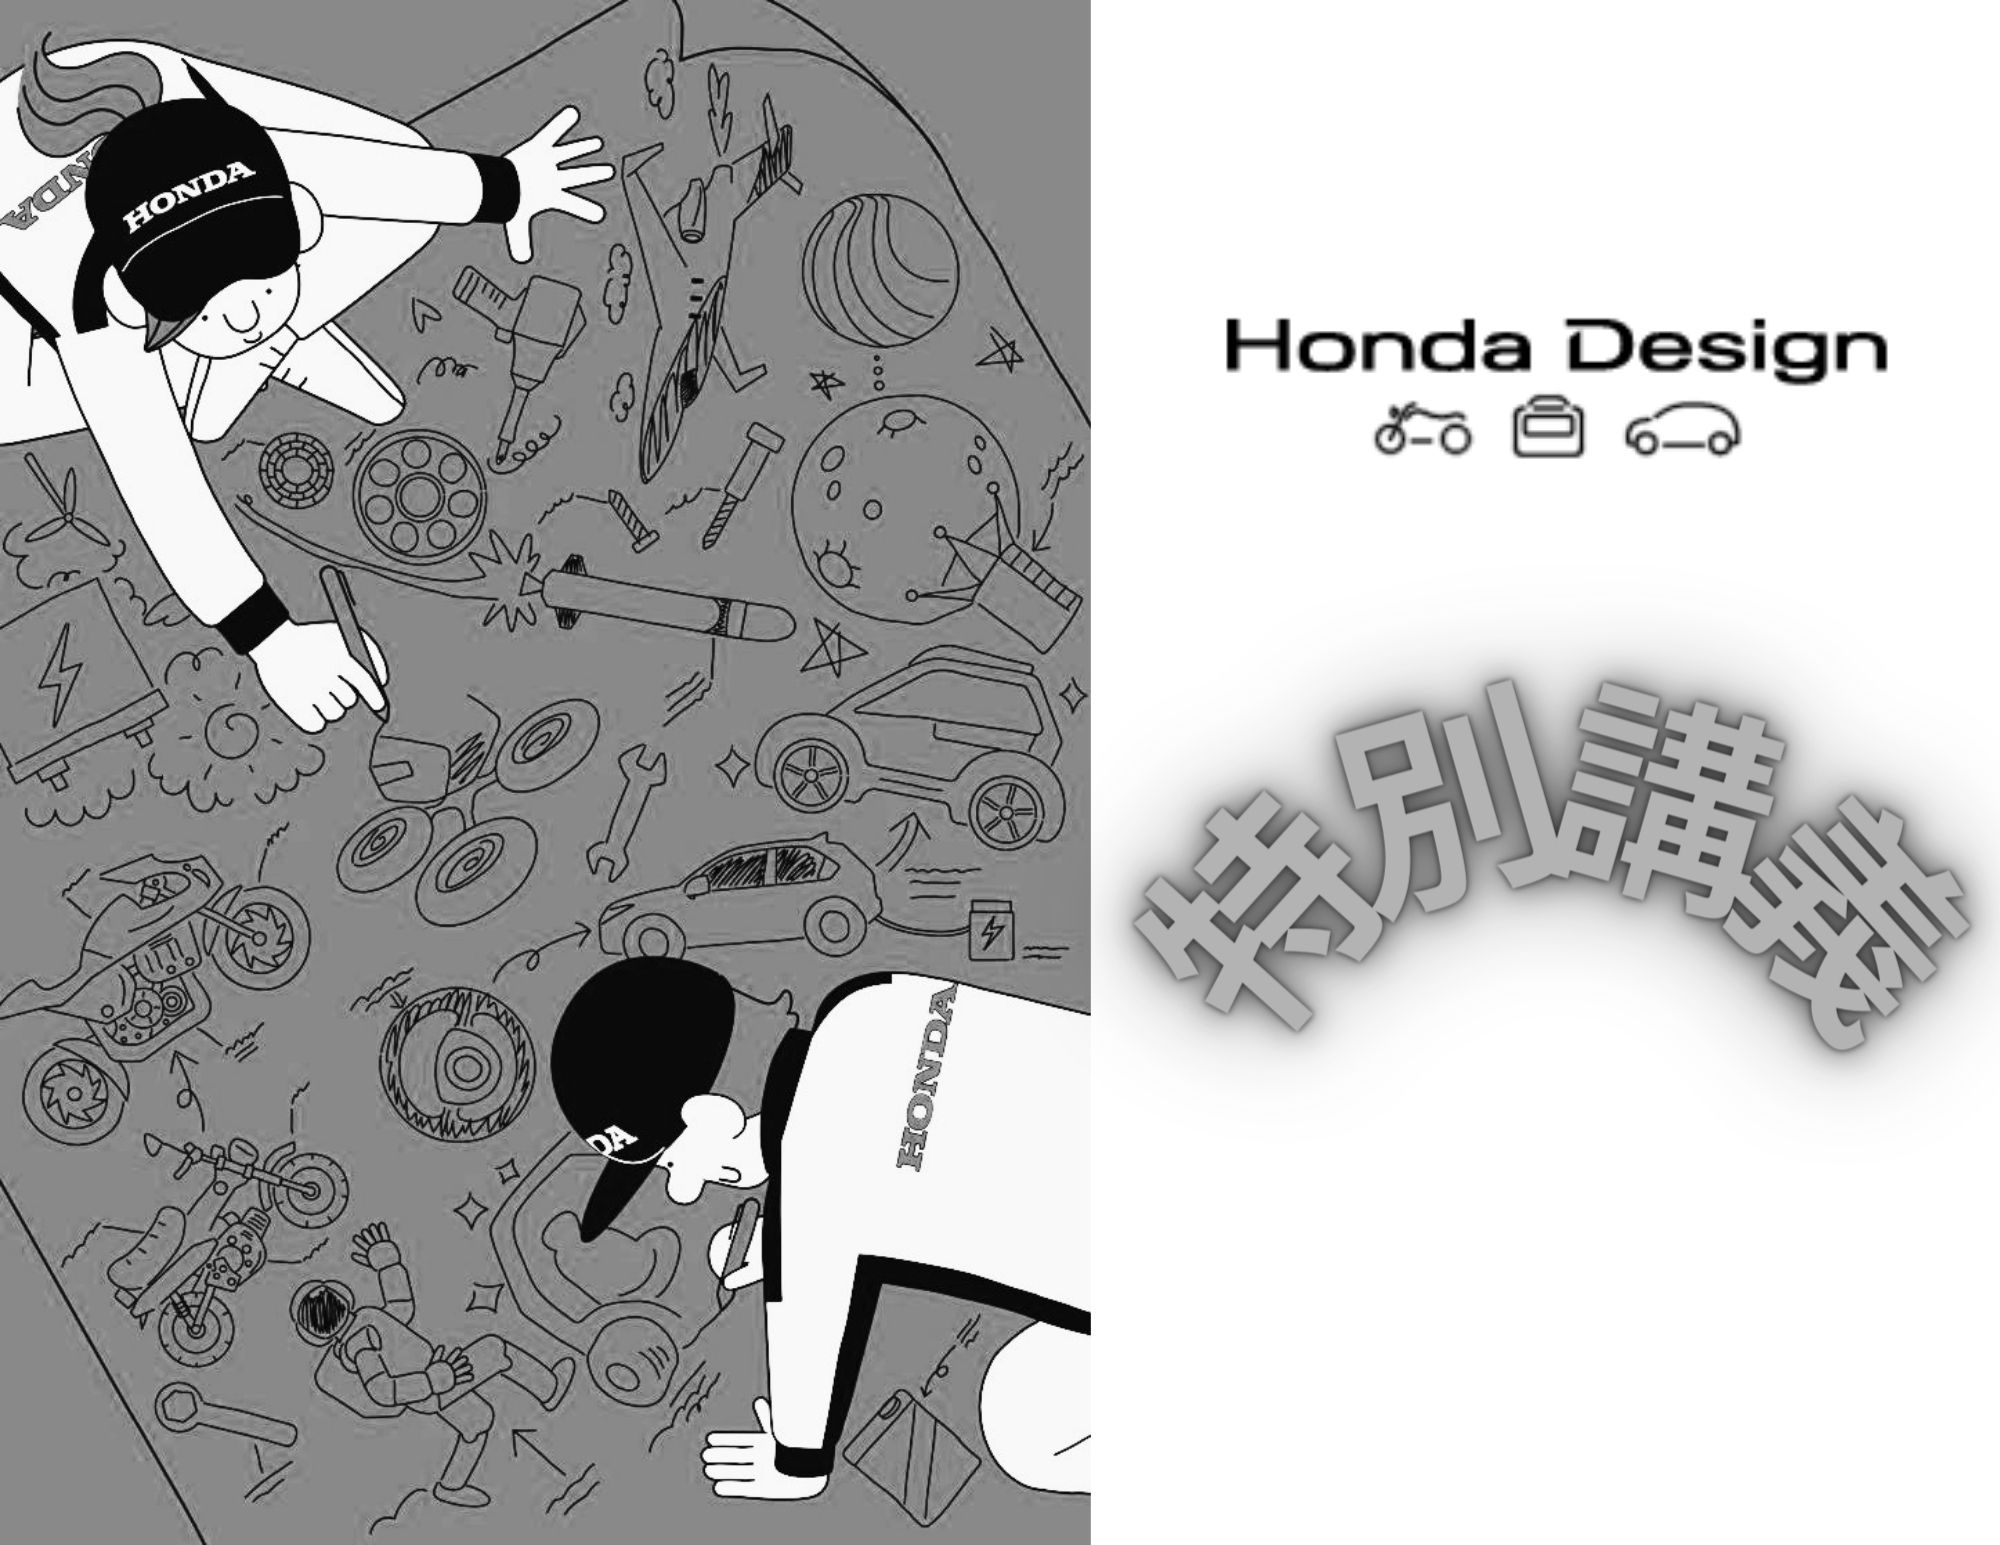 【特別講義】Honda Designについて/クレーモデルの制作実習